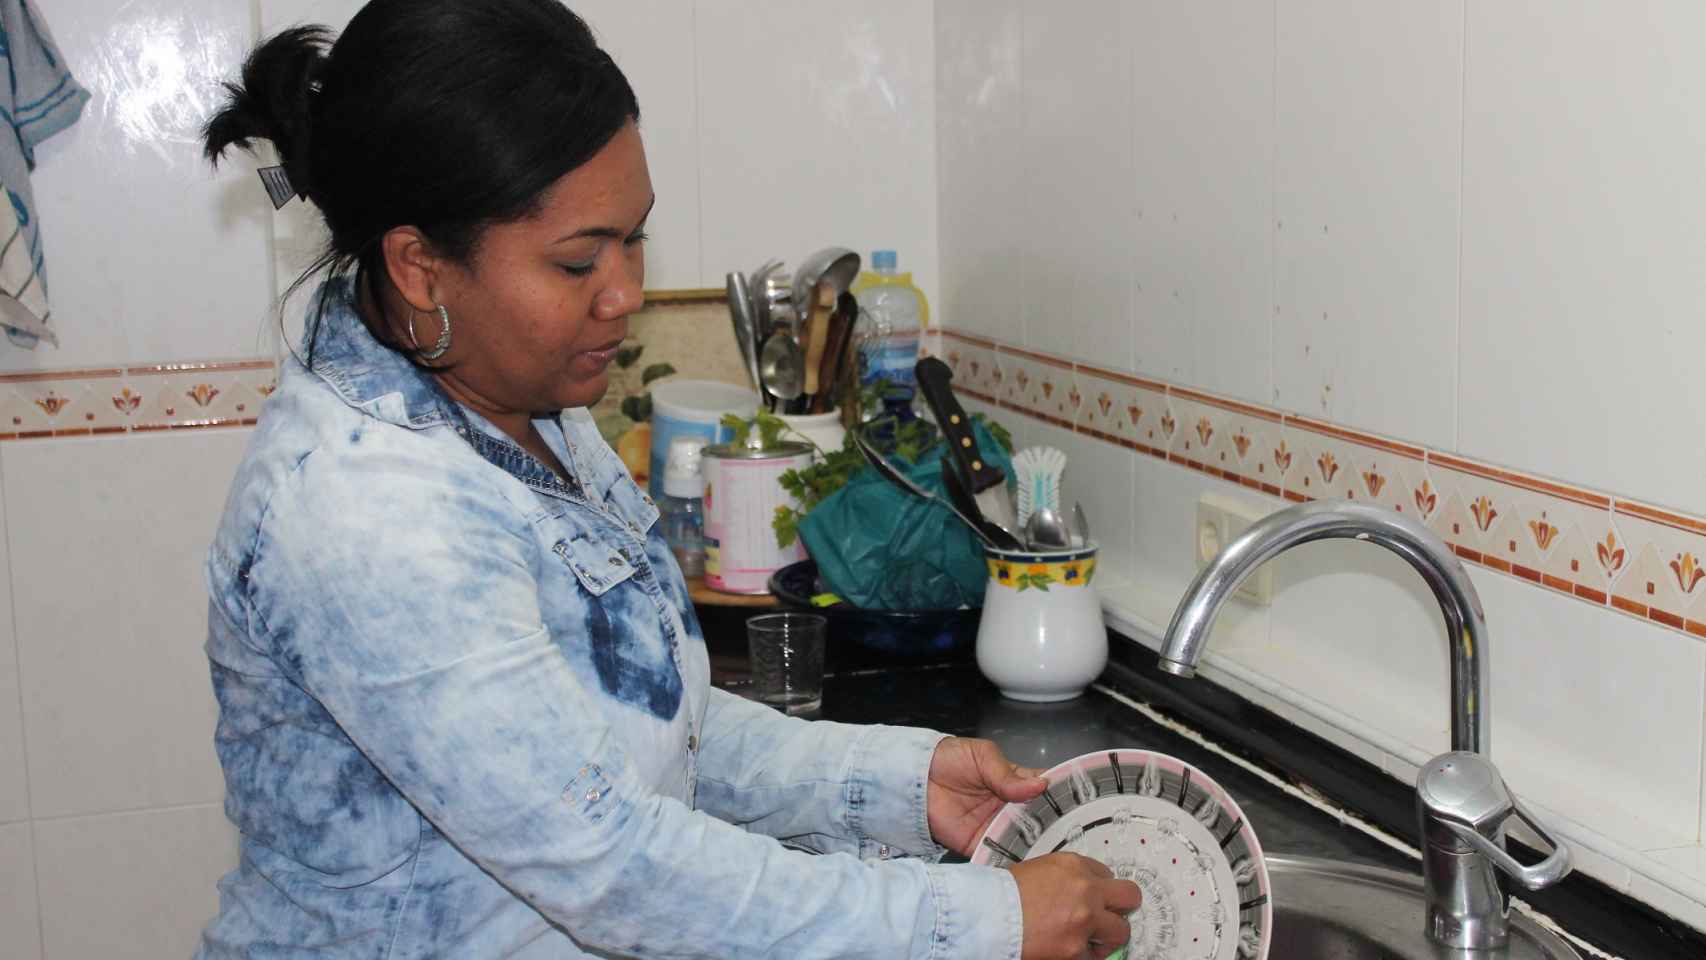 Juliana lava los platos en la cocina del piso que ocupa tras ser desahuciada de su domicilio